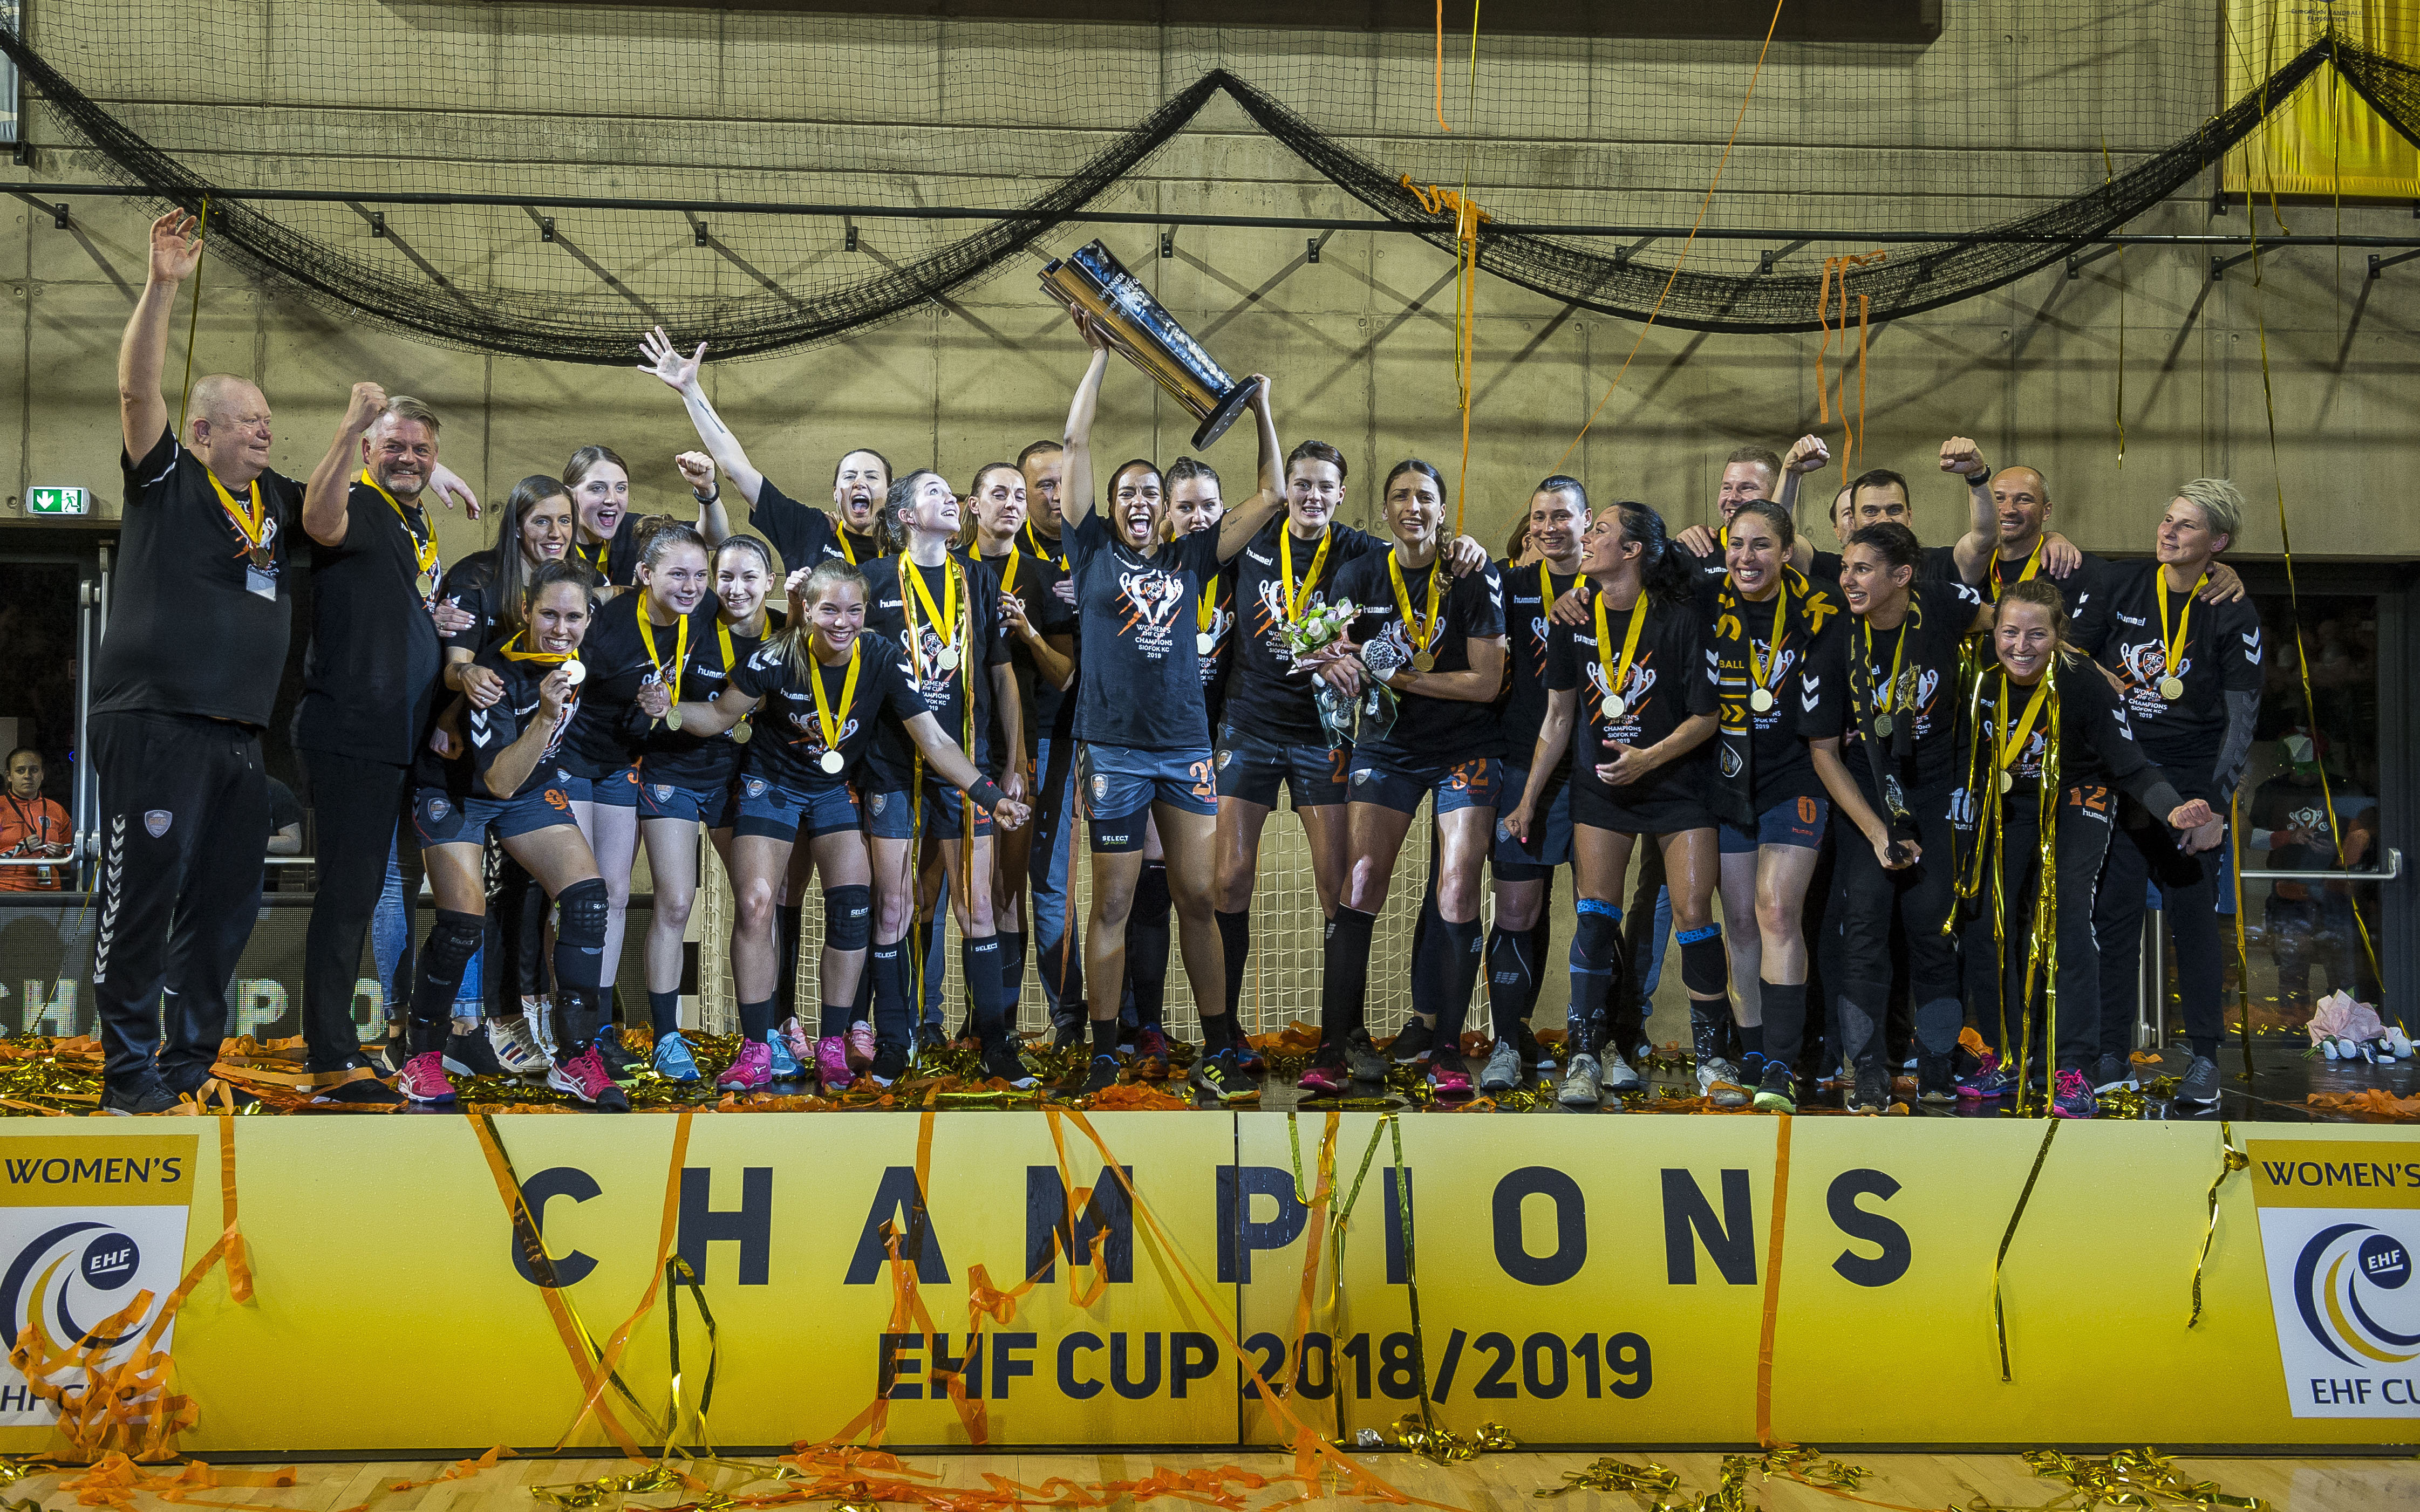 Siófok تفوز بكأس EHF للسيدات للفوز باللقب الأول للنادي!